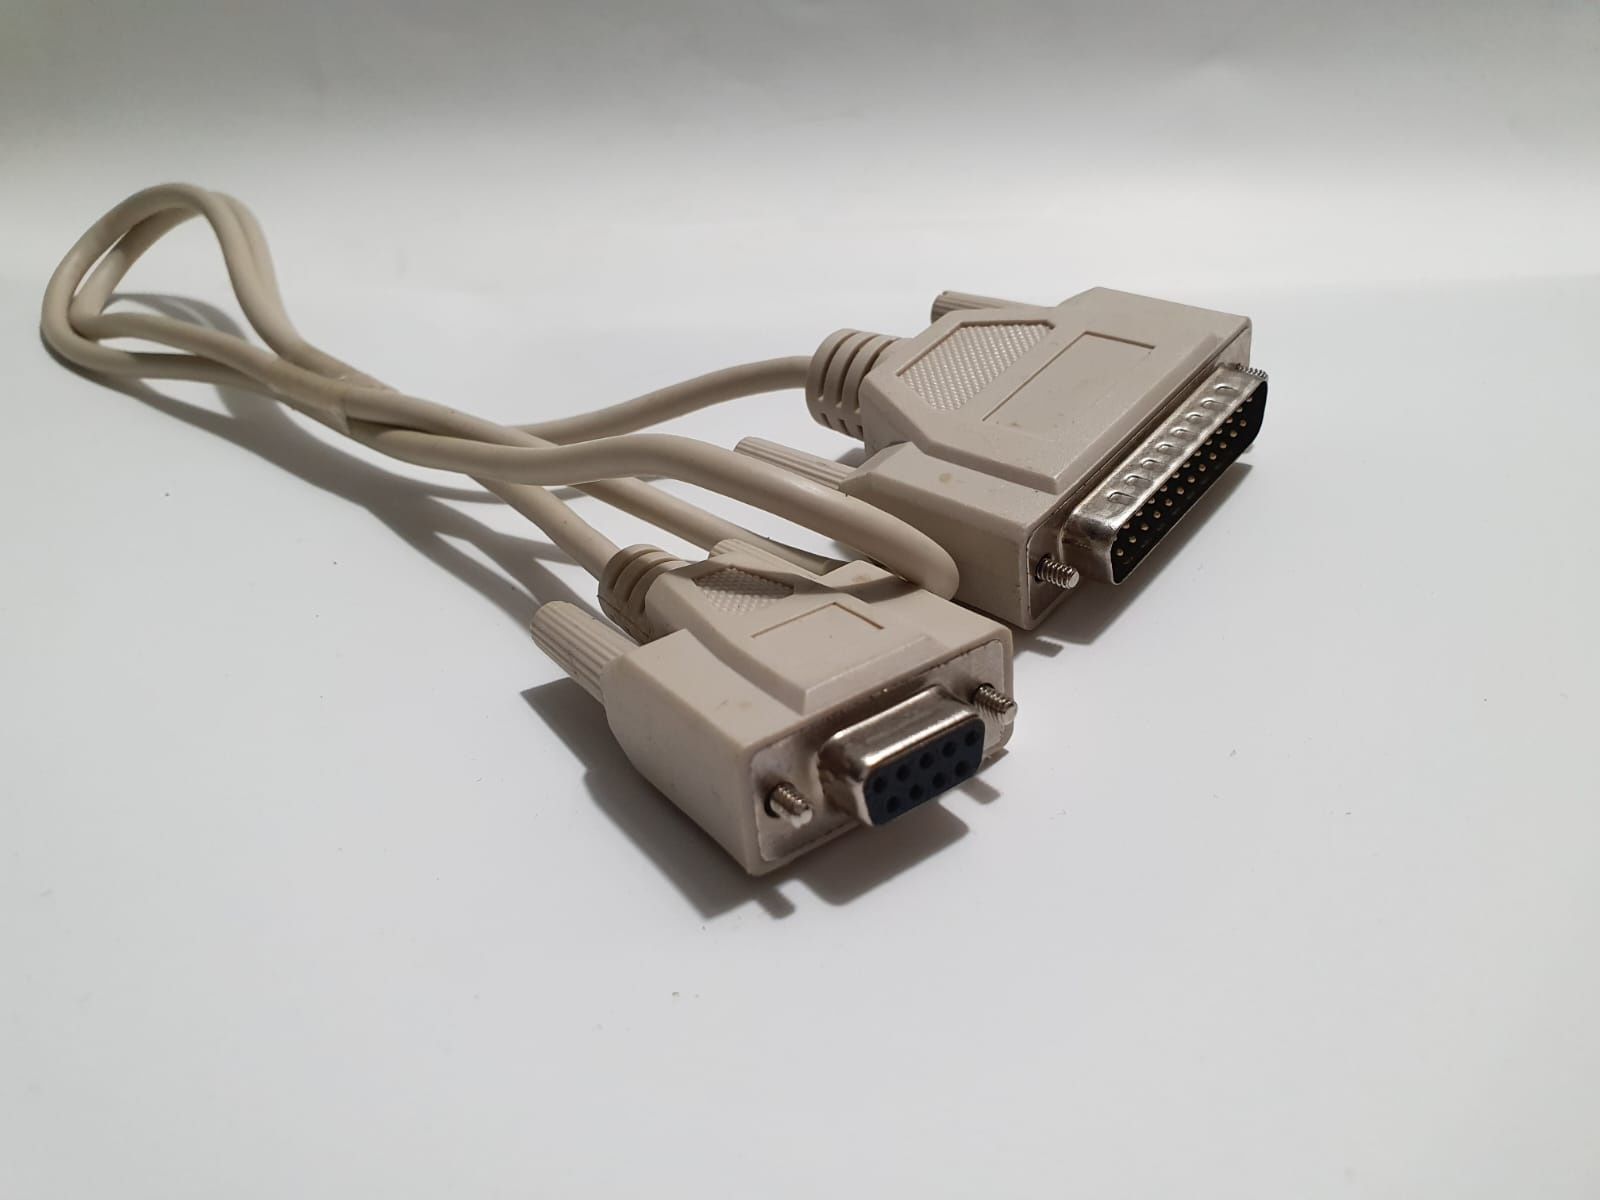 Cablu VGA si SCART